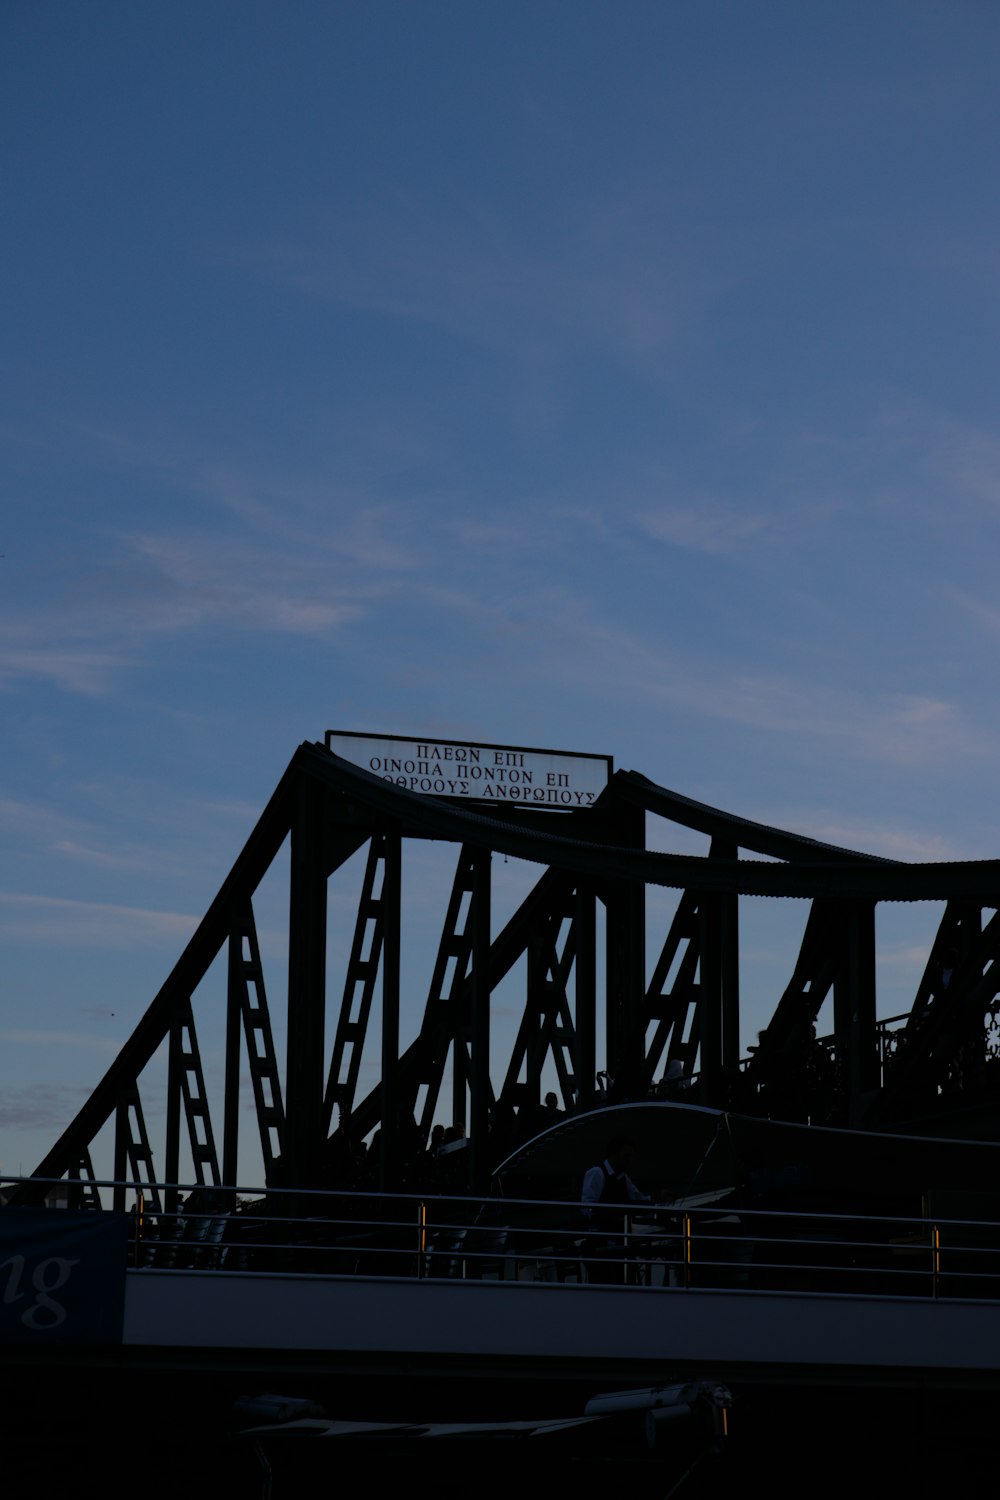 a large metal bridge